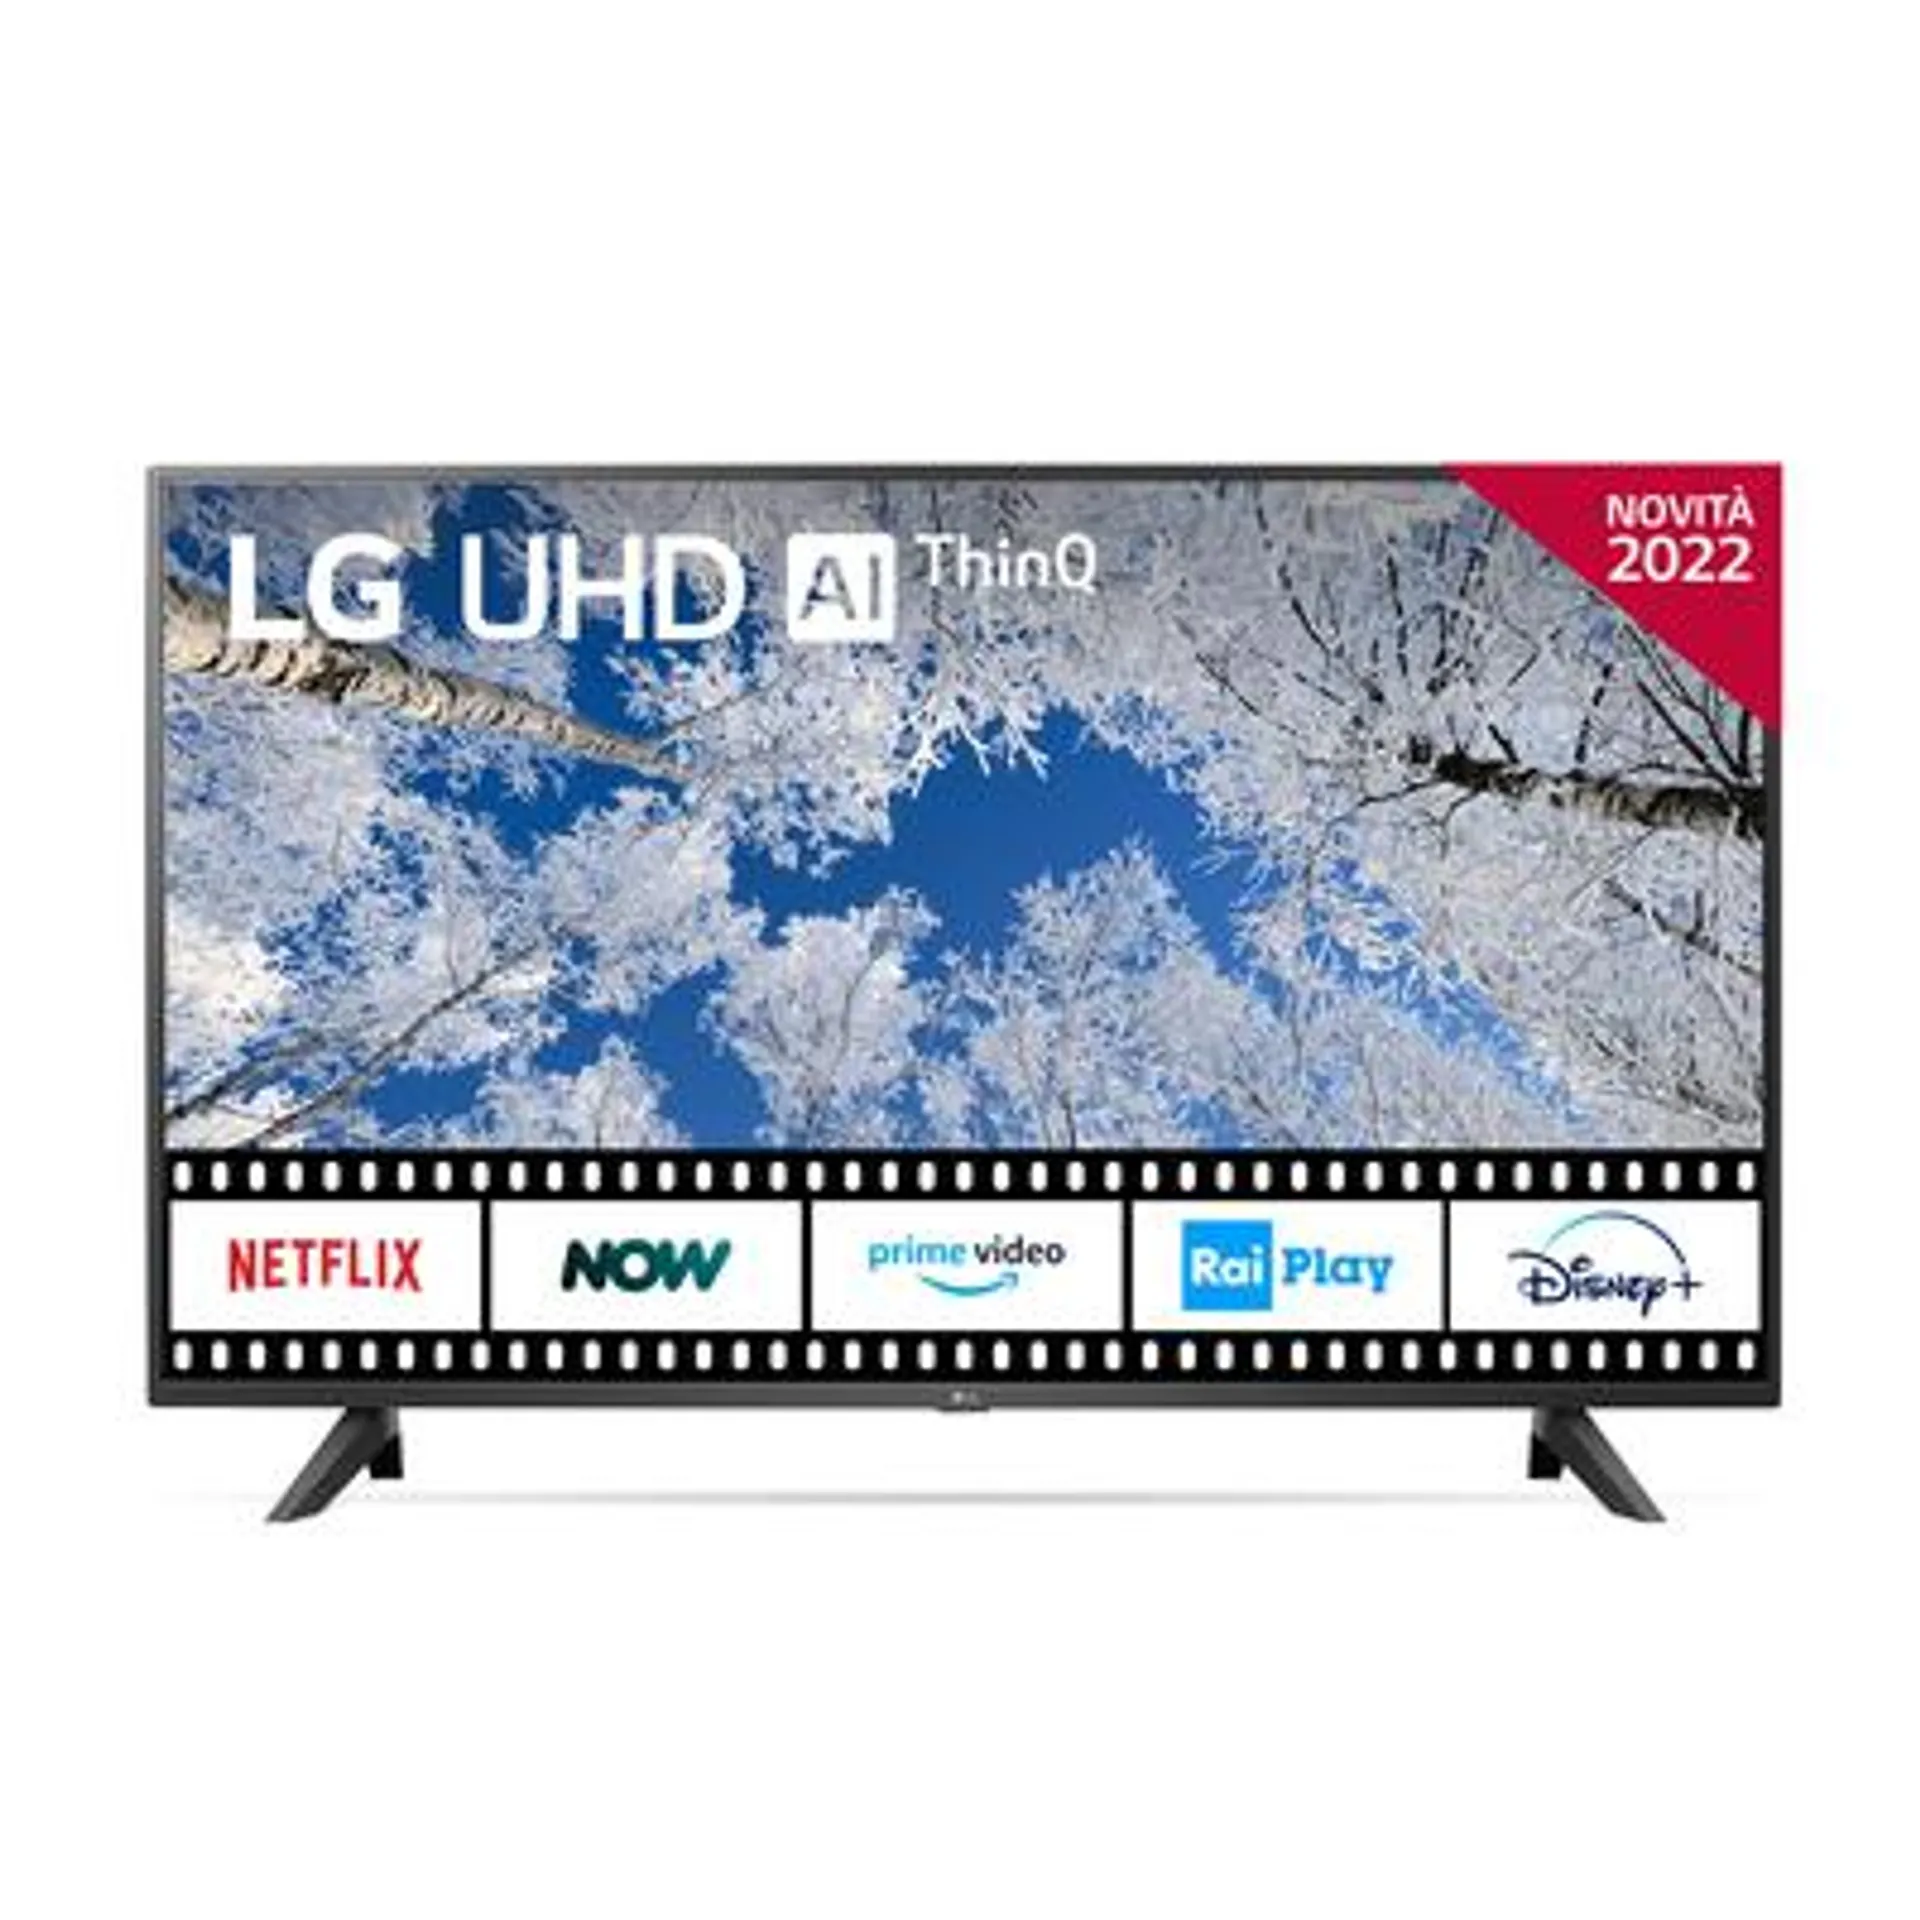 Dimensioni schermo (pollici) 65 - Smart Tv - Risoluzione 4K